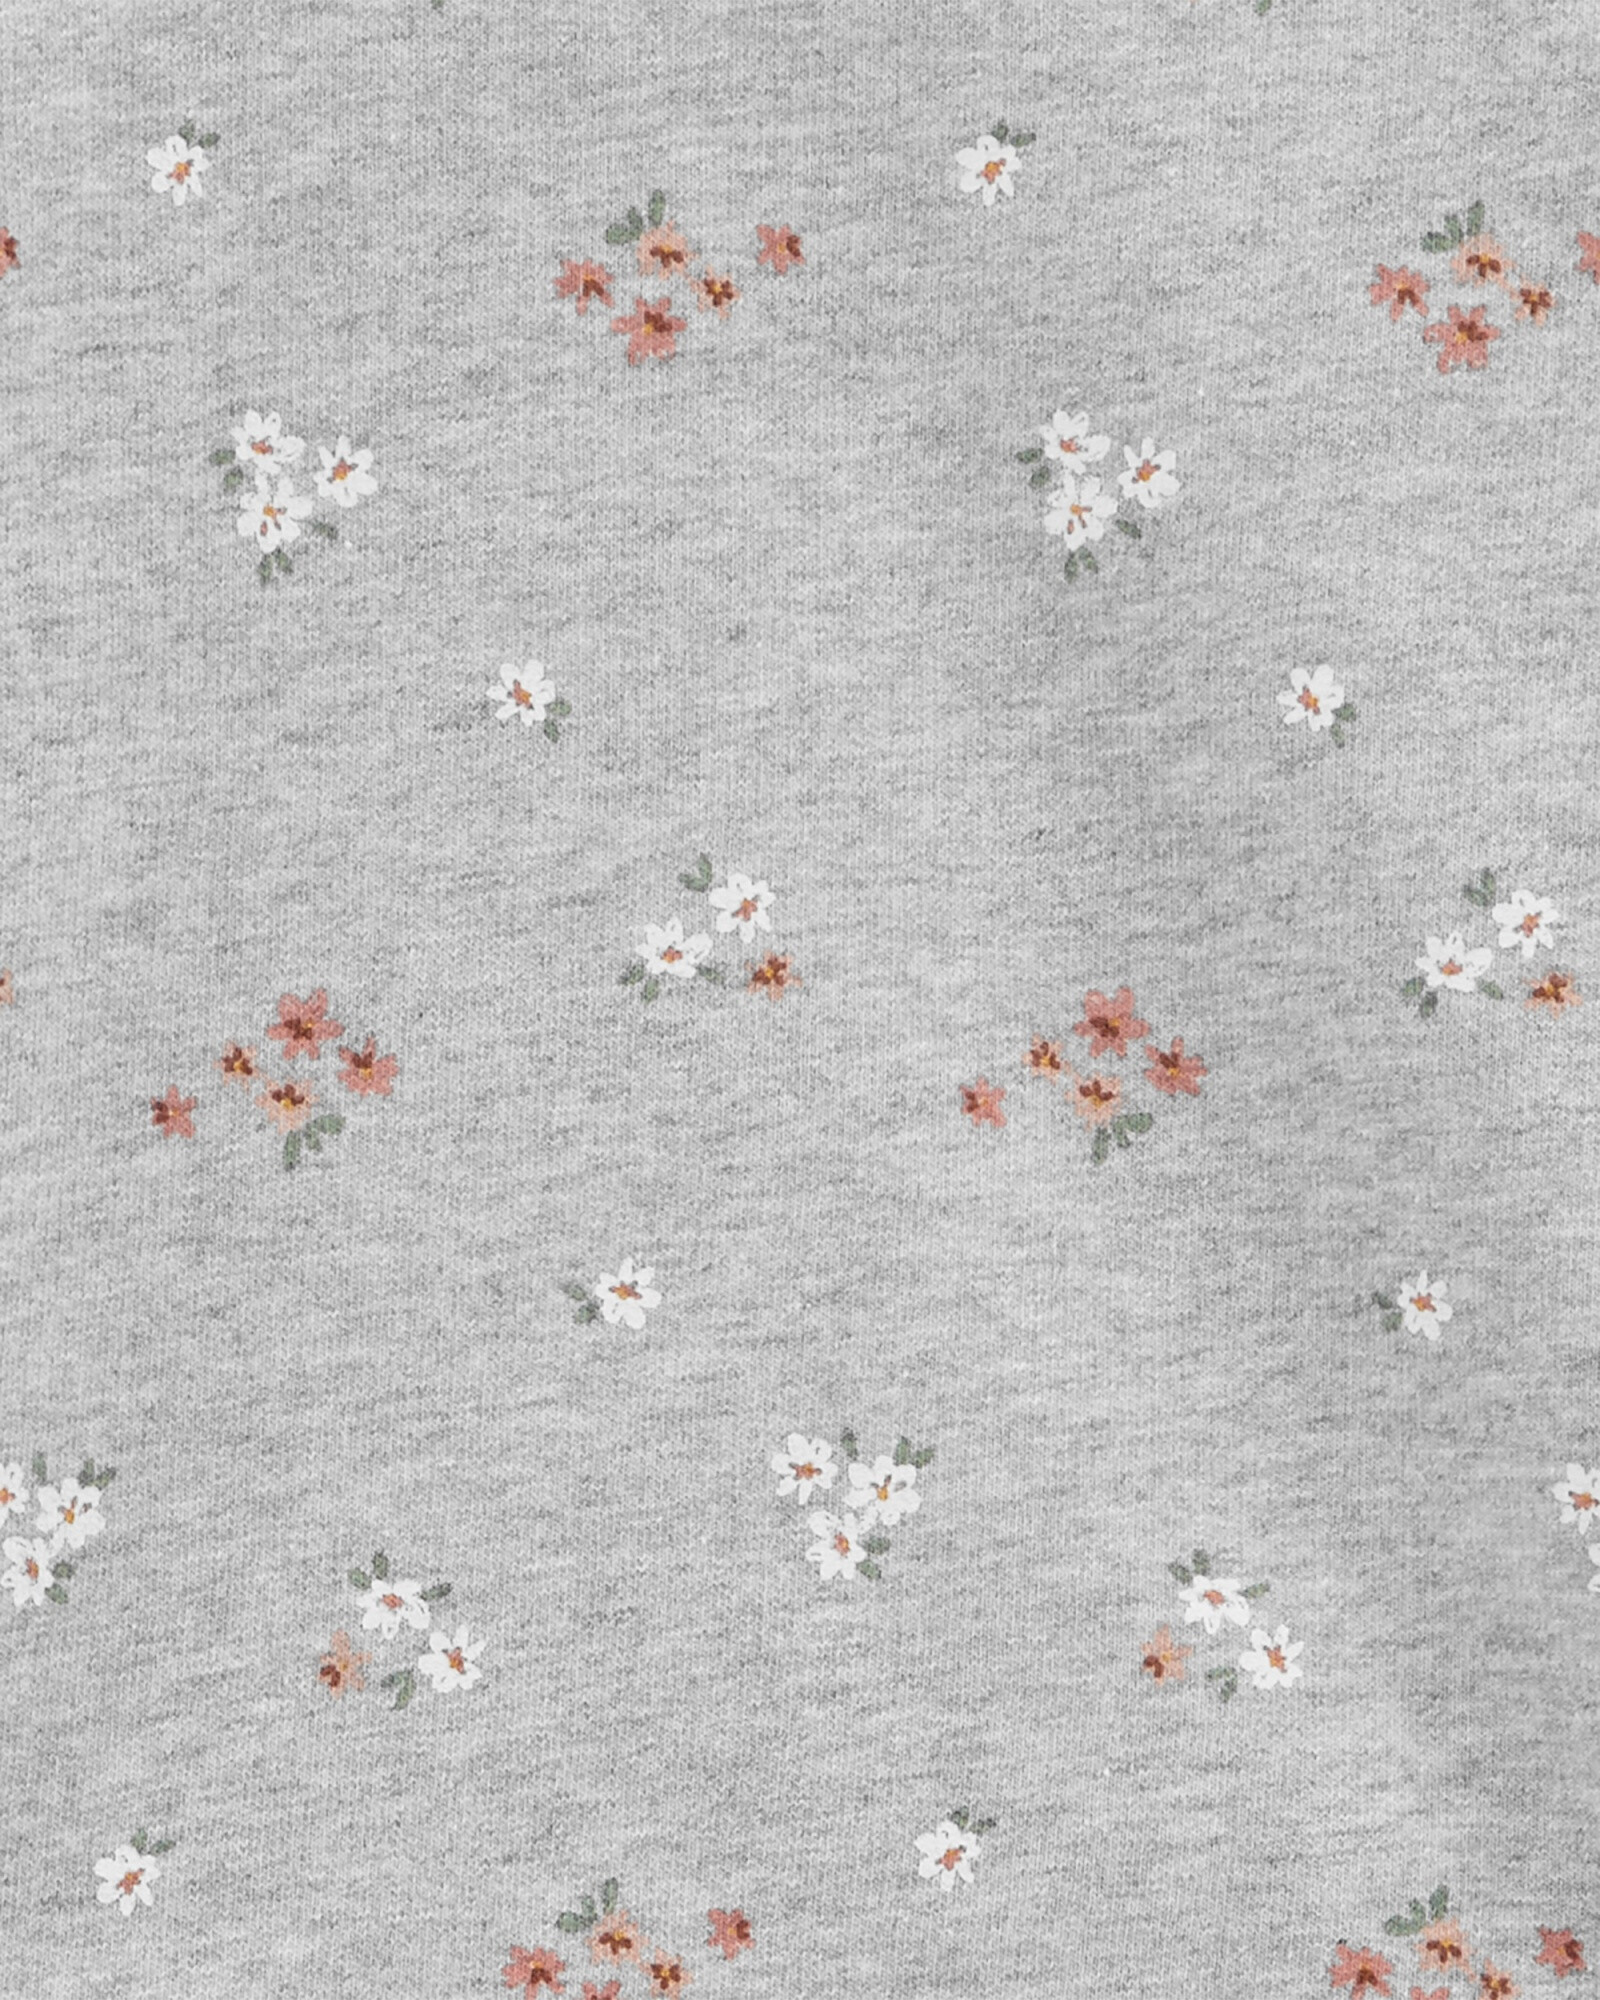 Set dos piezas pantalón y blusa de algodón, diseño floral Sin color